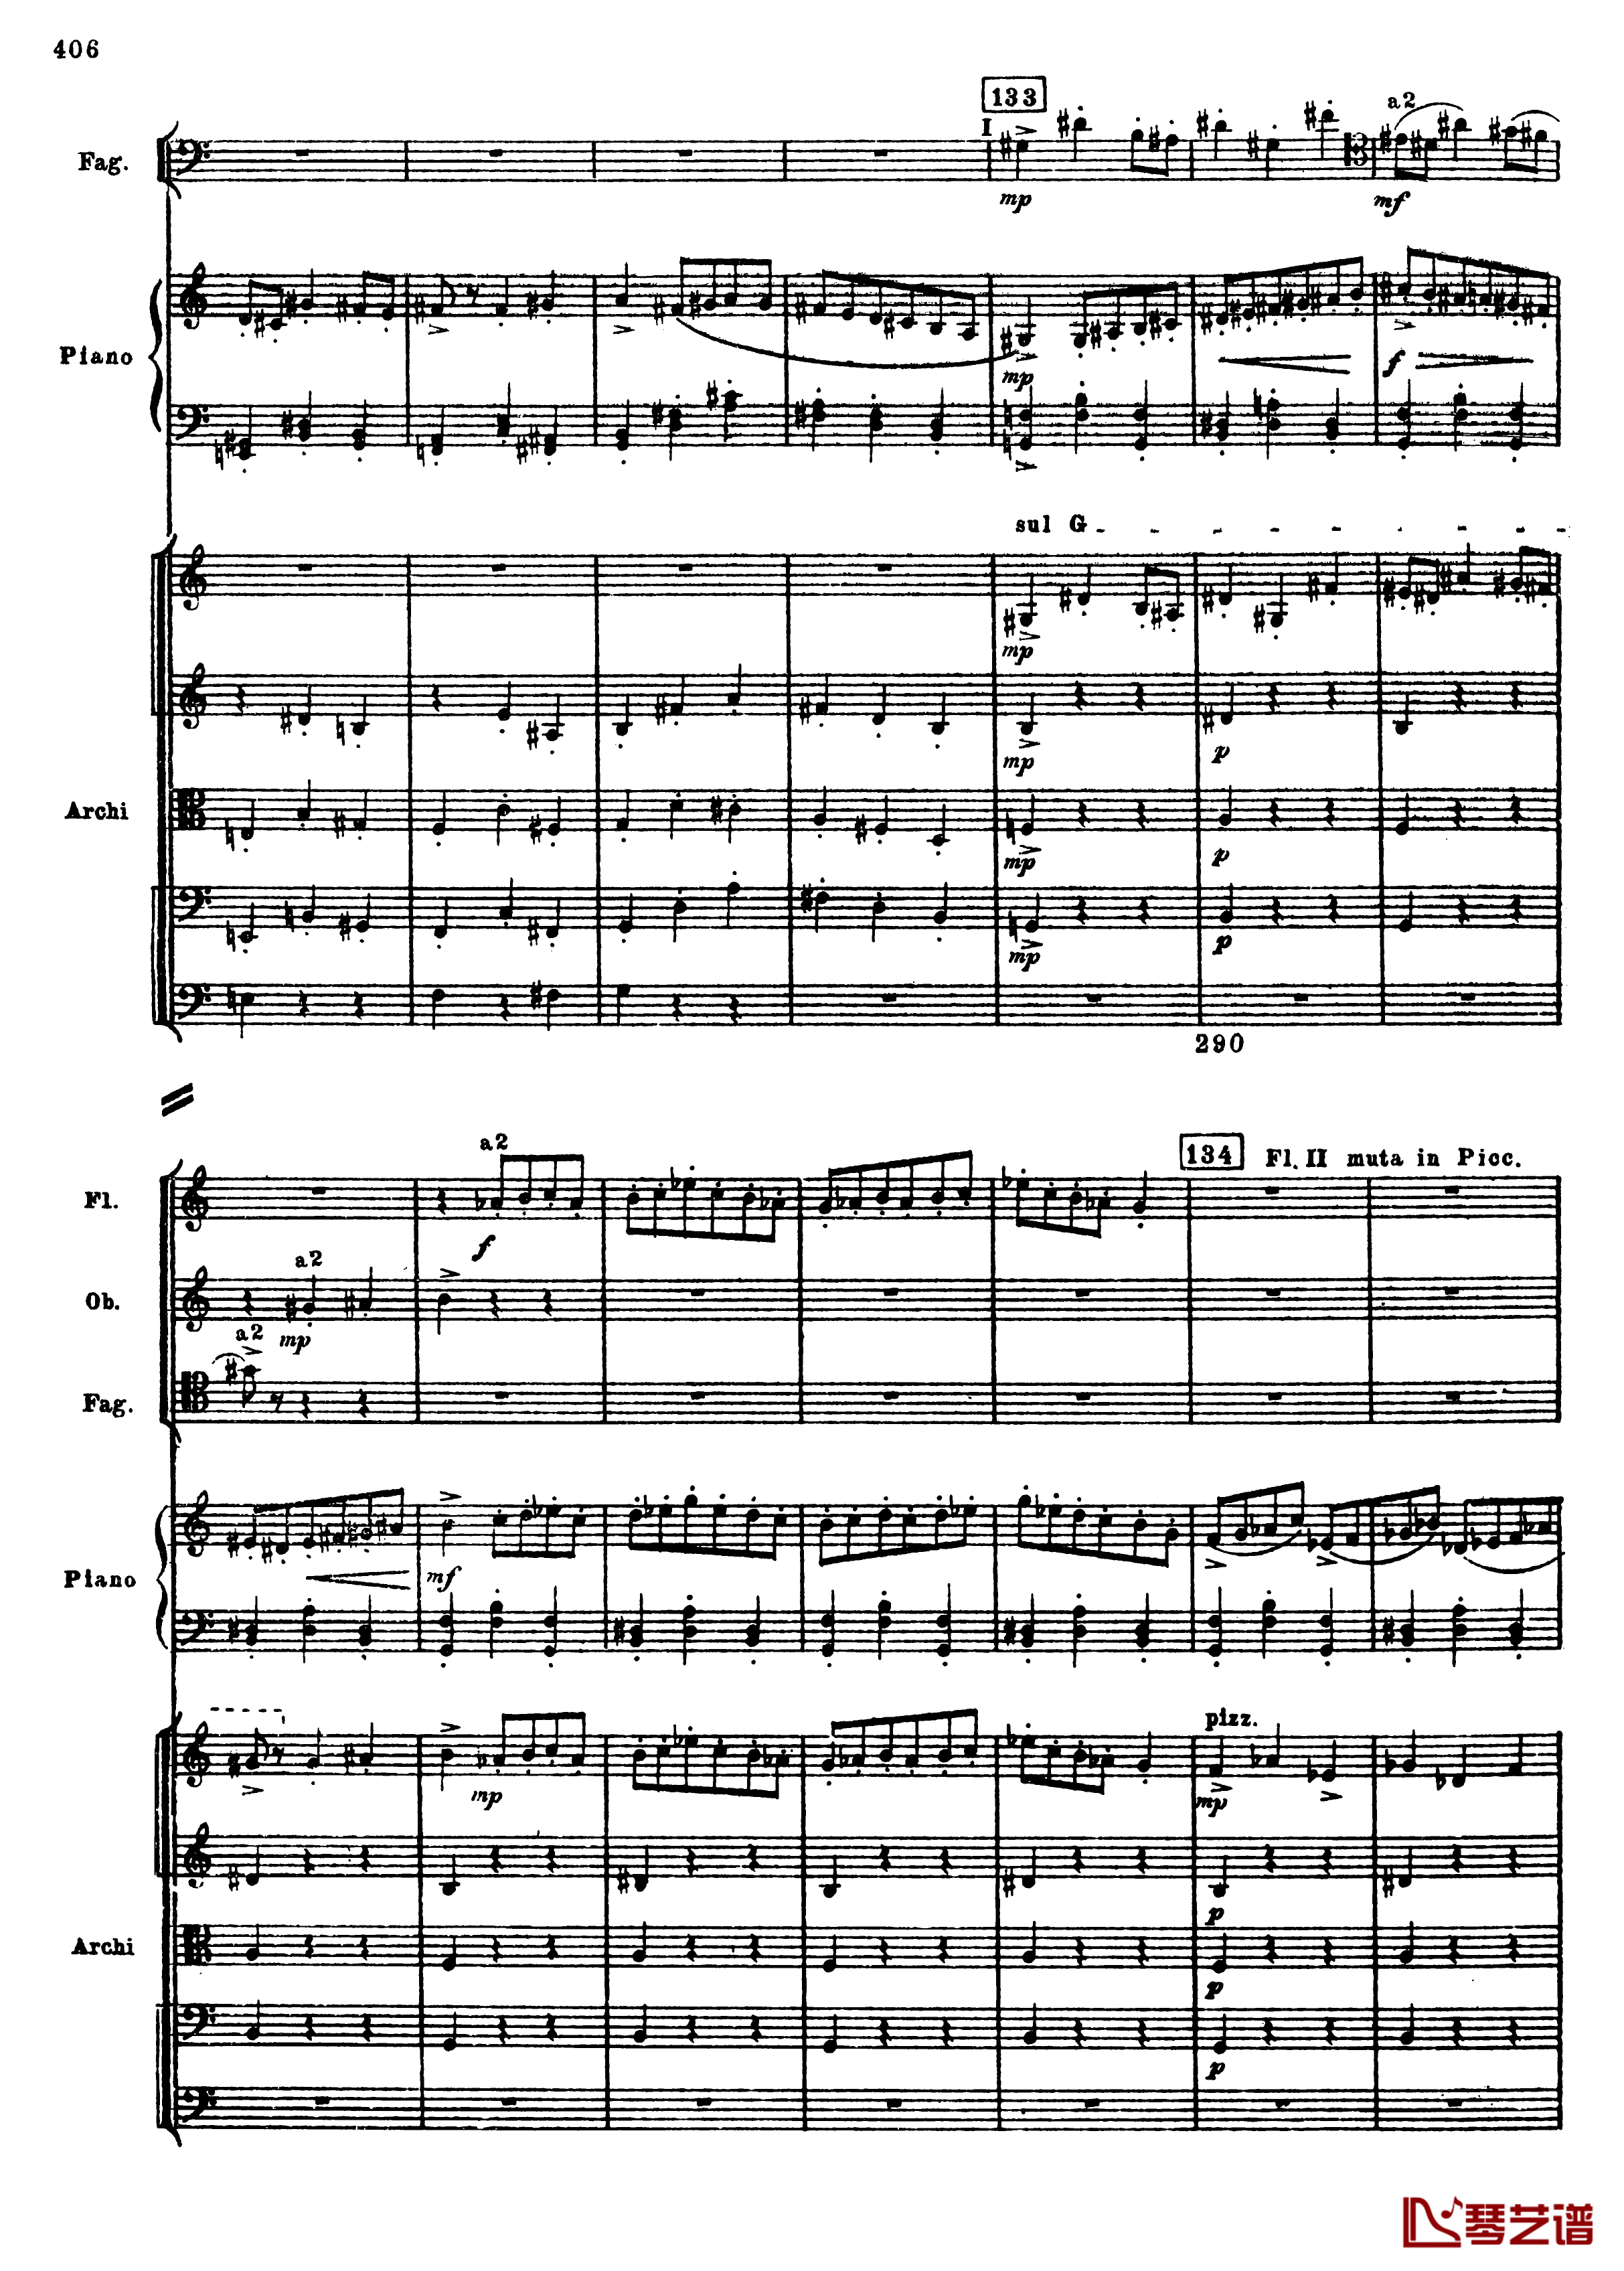 普罗科菲耶夫第三钢琴协奏曲钢琴谱-总谱-普罗科非耶夫138